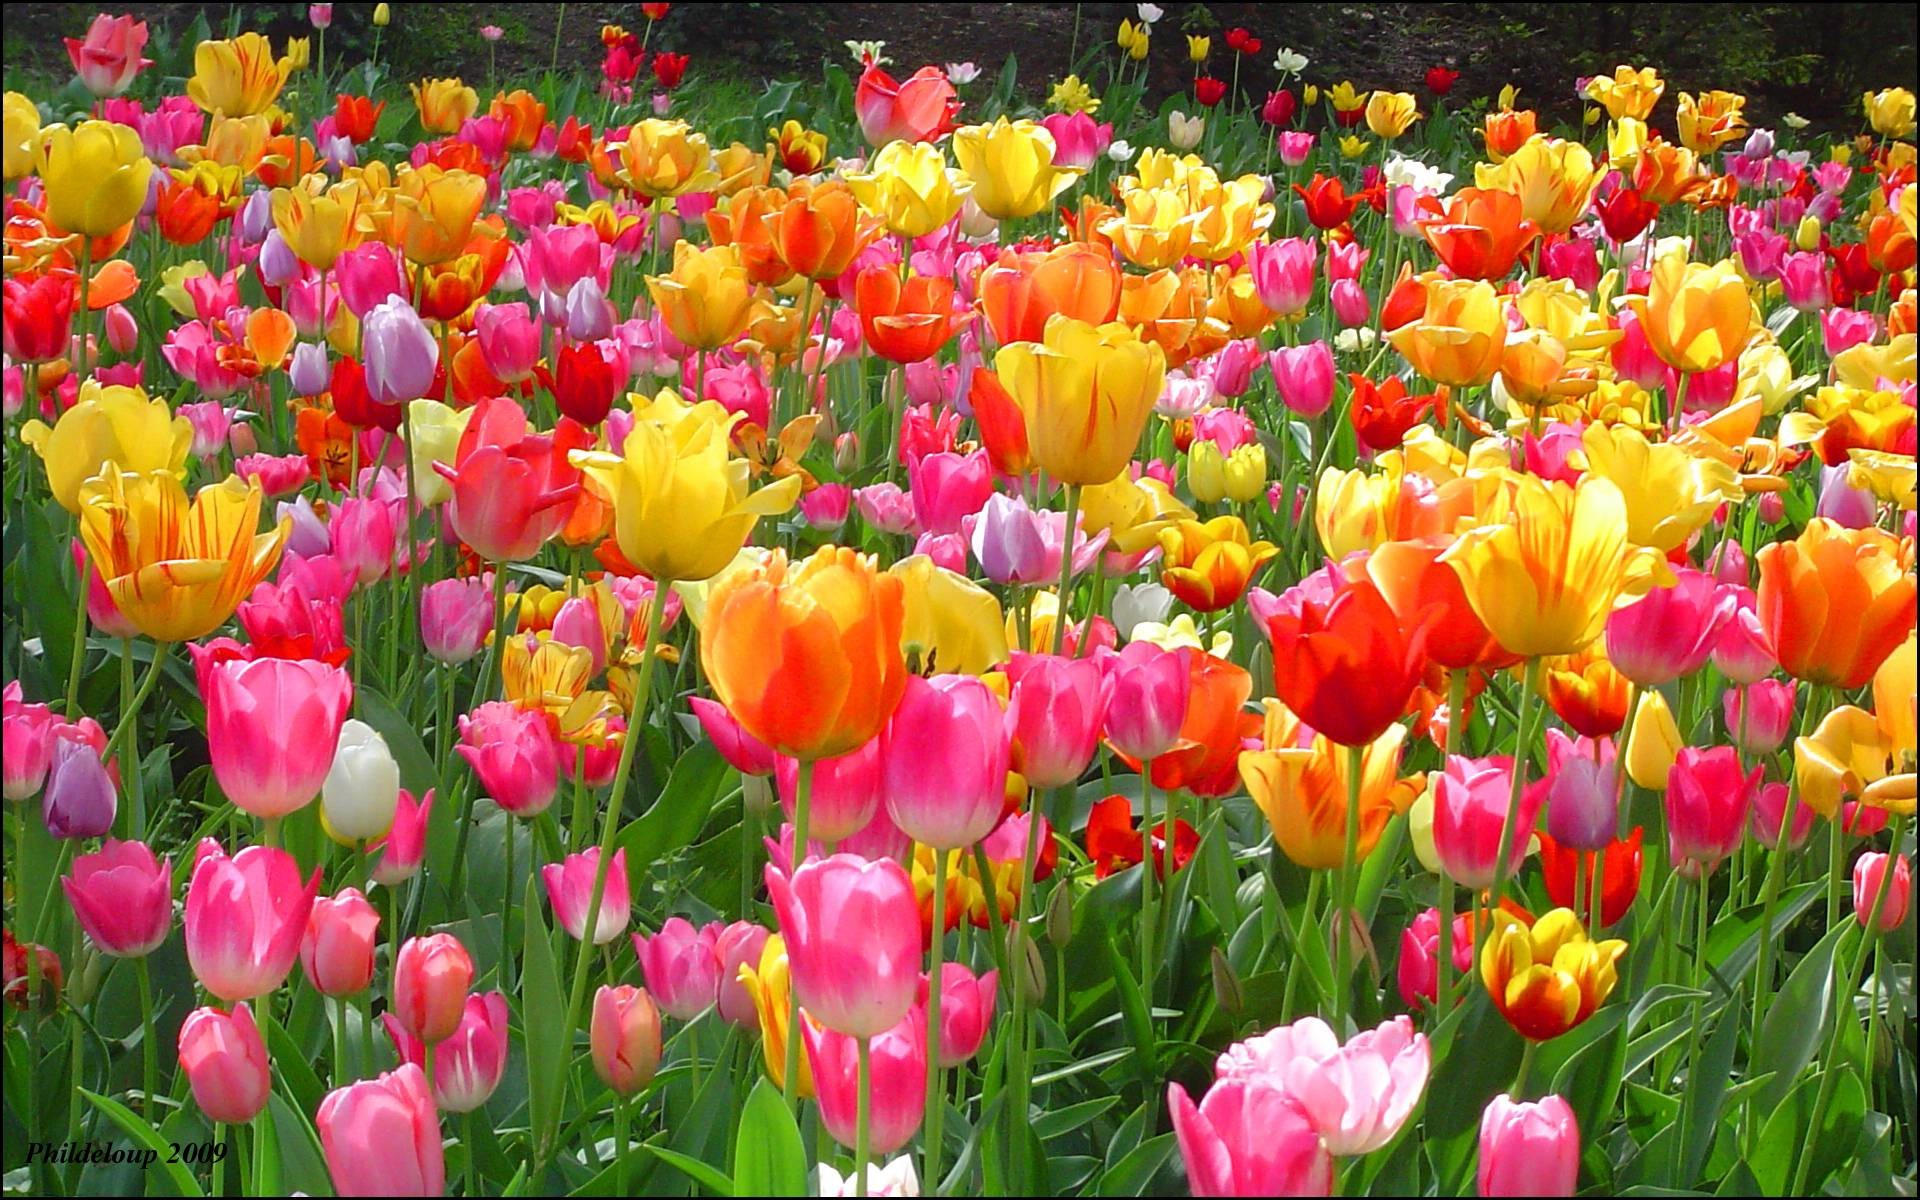 Hoa tulip được biết đến với vẻ đẹp nổi bật và sắc sảo. Những bông hoa tulip đầy màu sắc trên nền xanh tươi sẽ khiến bạn không thể rời mắt khỏi hình ảnh đó. Hãy cùng thưởng thức vẻ đẹp của hoa tulip và khám phá thêm những điều thú vị về loài hoa này.